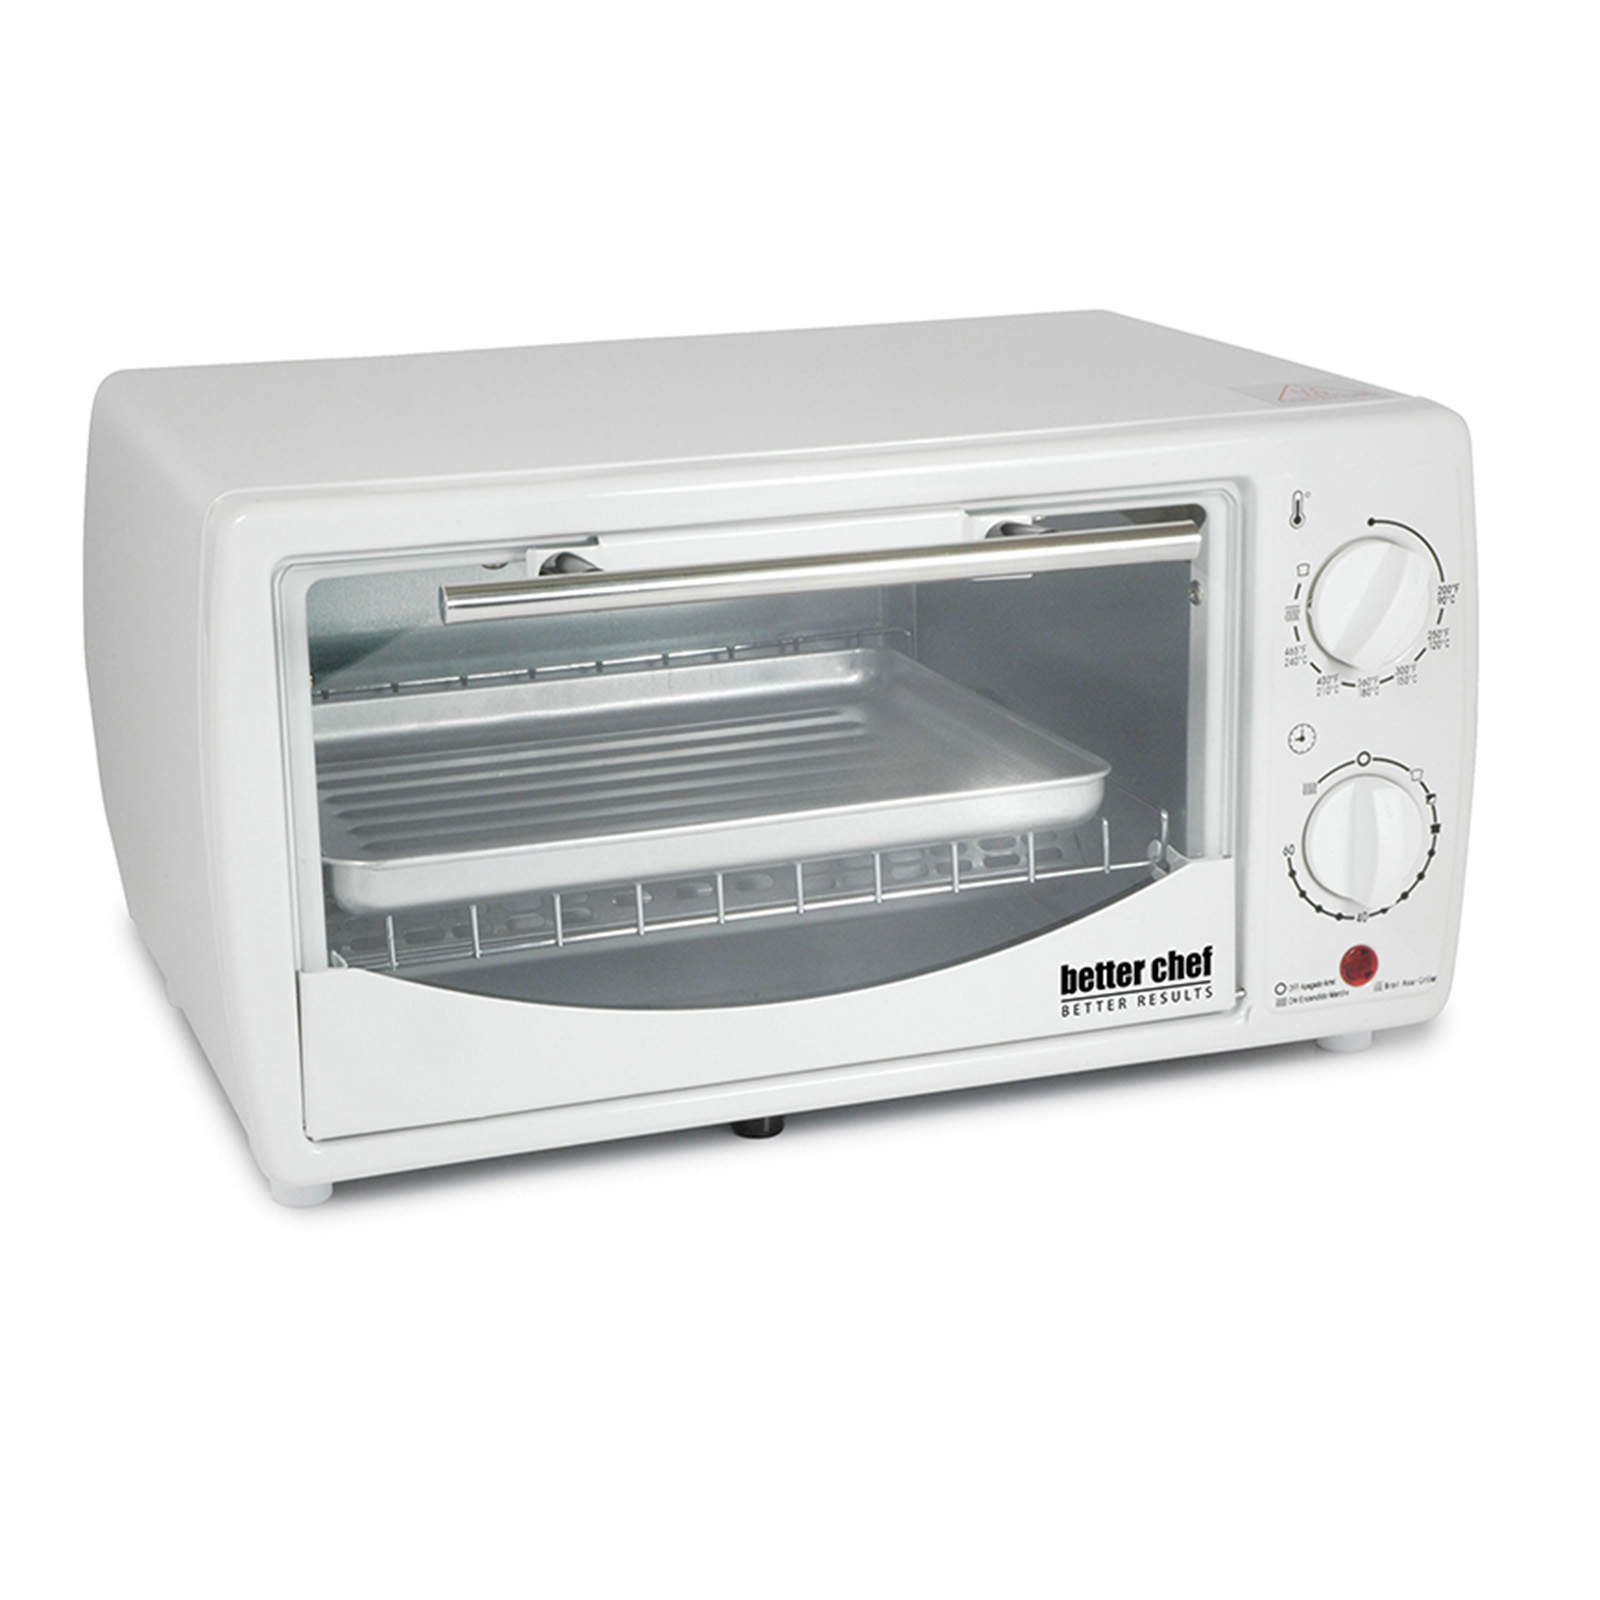 Better Chef 9 Liter Toaster Oven Broiler-White - 97089570M